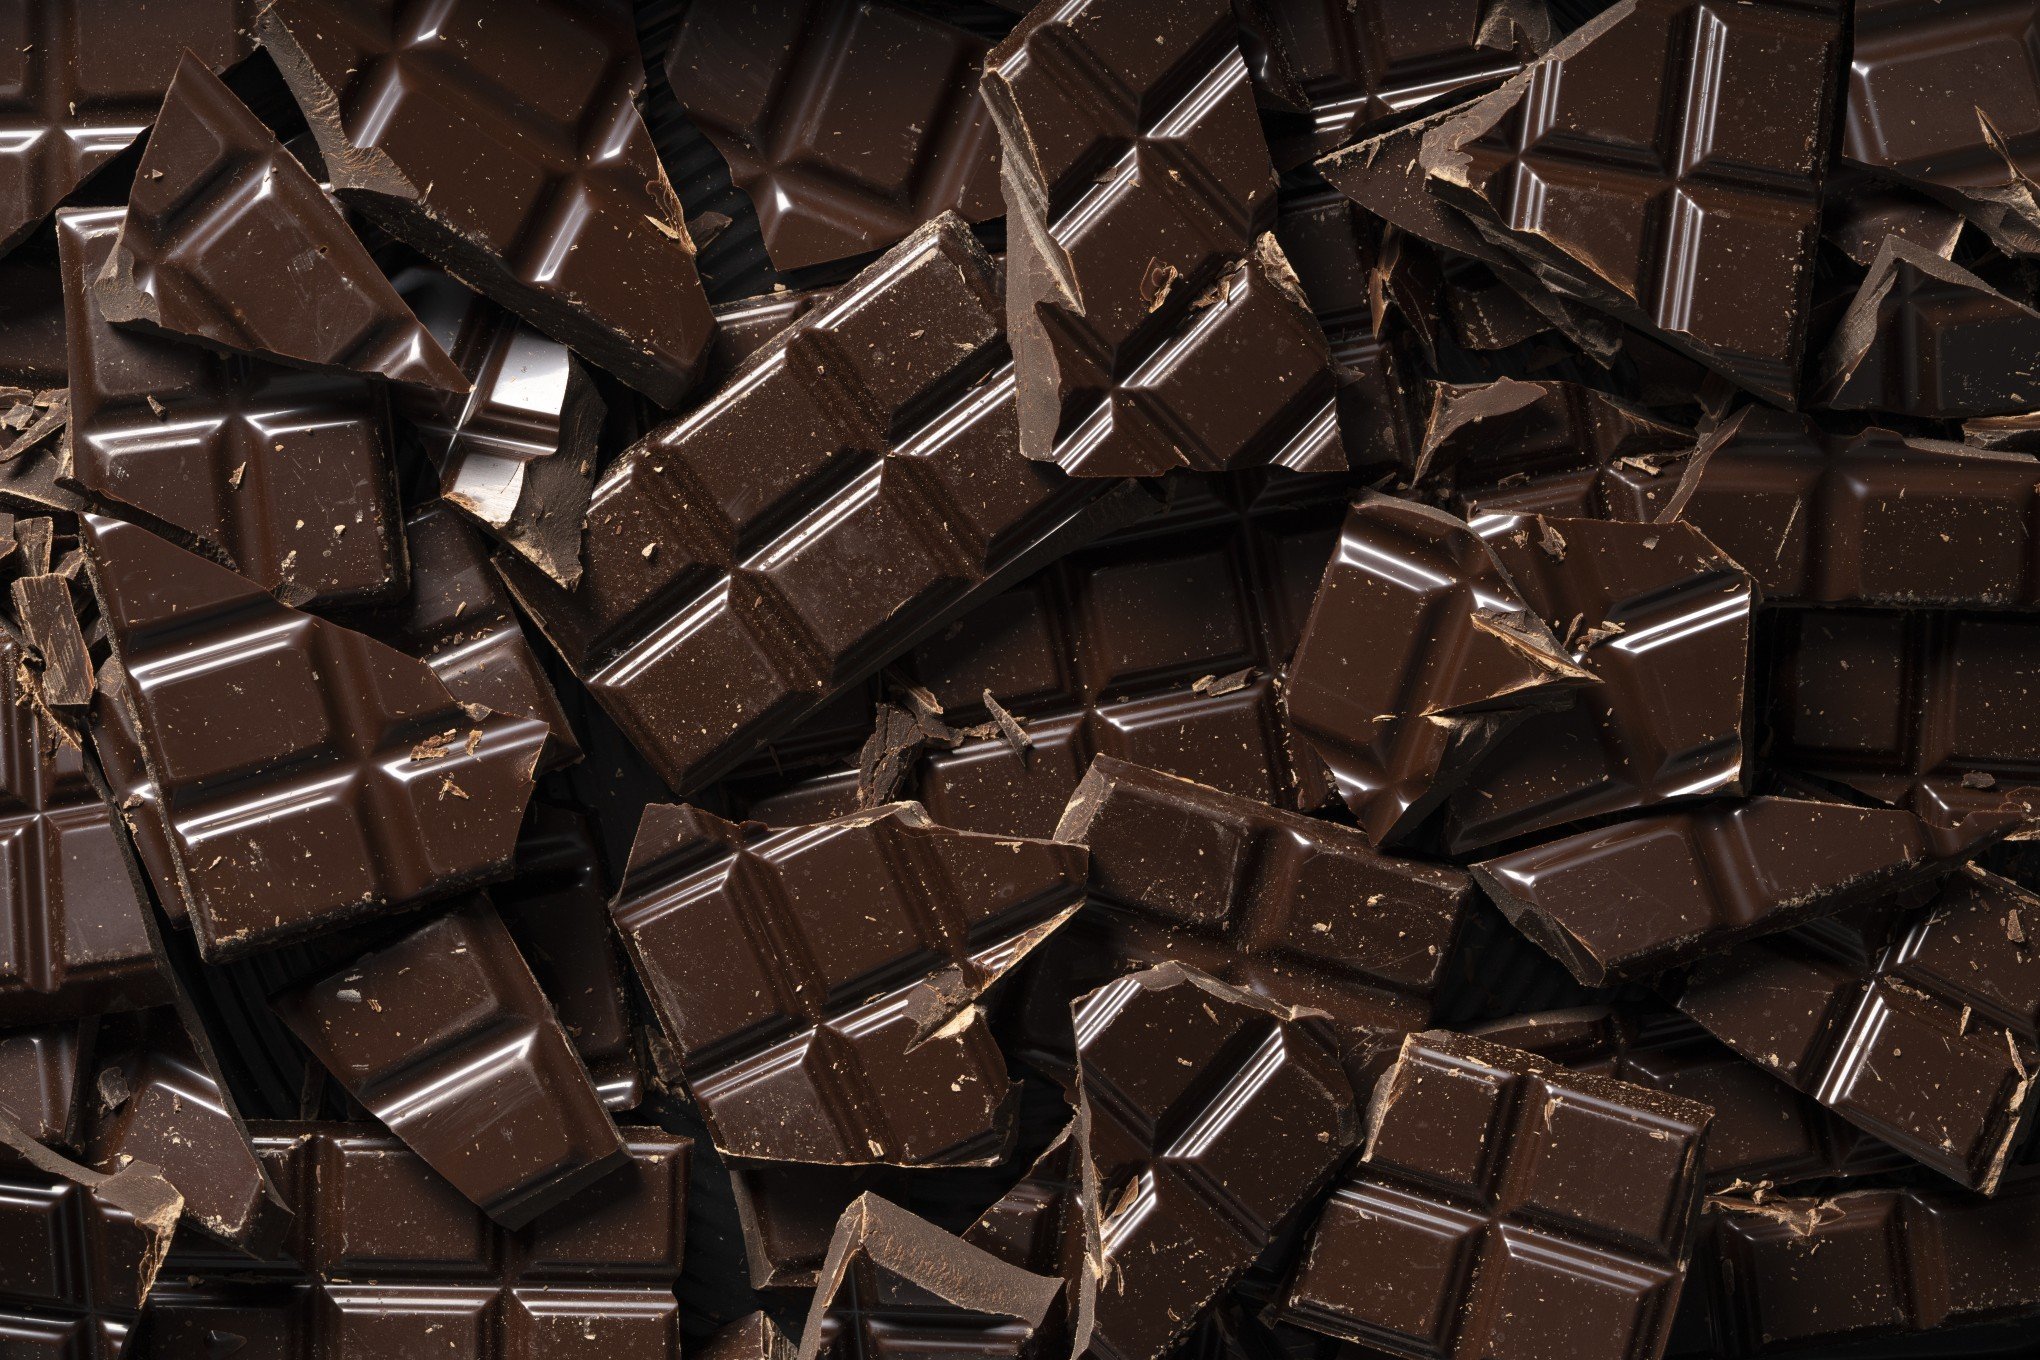 PÁSCOA: 7 doces deliciosos para quem tem diabetes aproveitar sem estresse